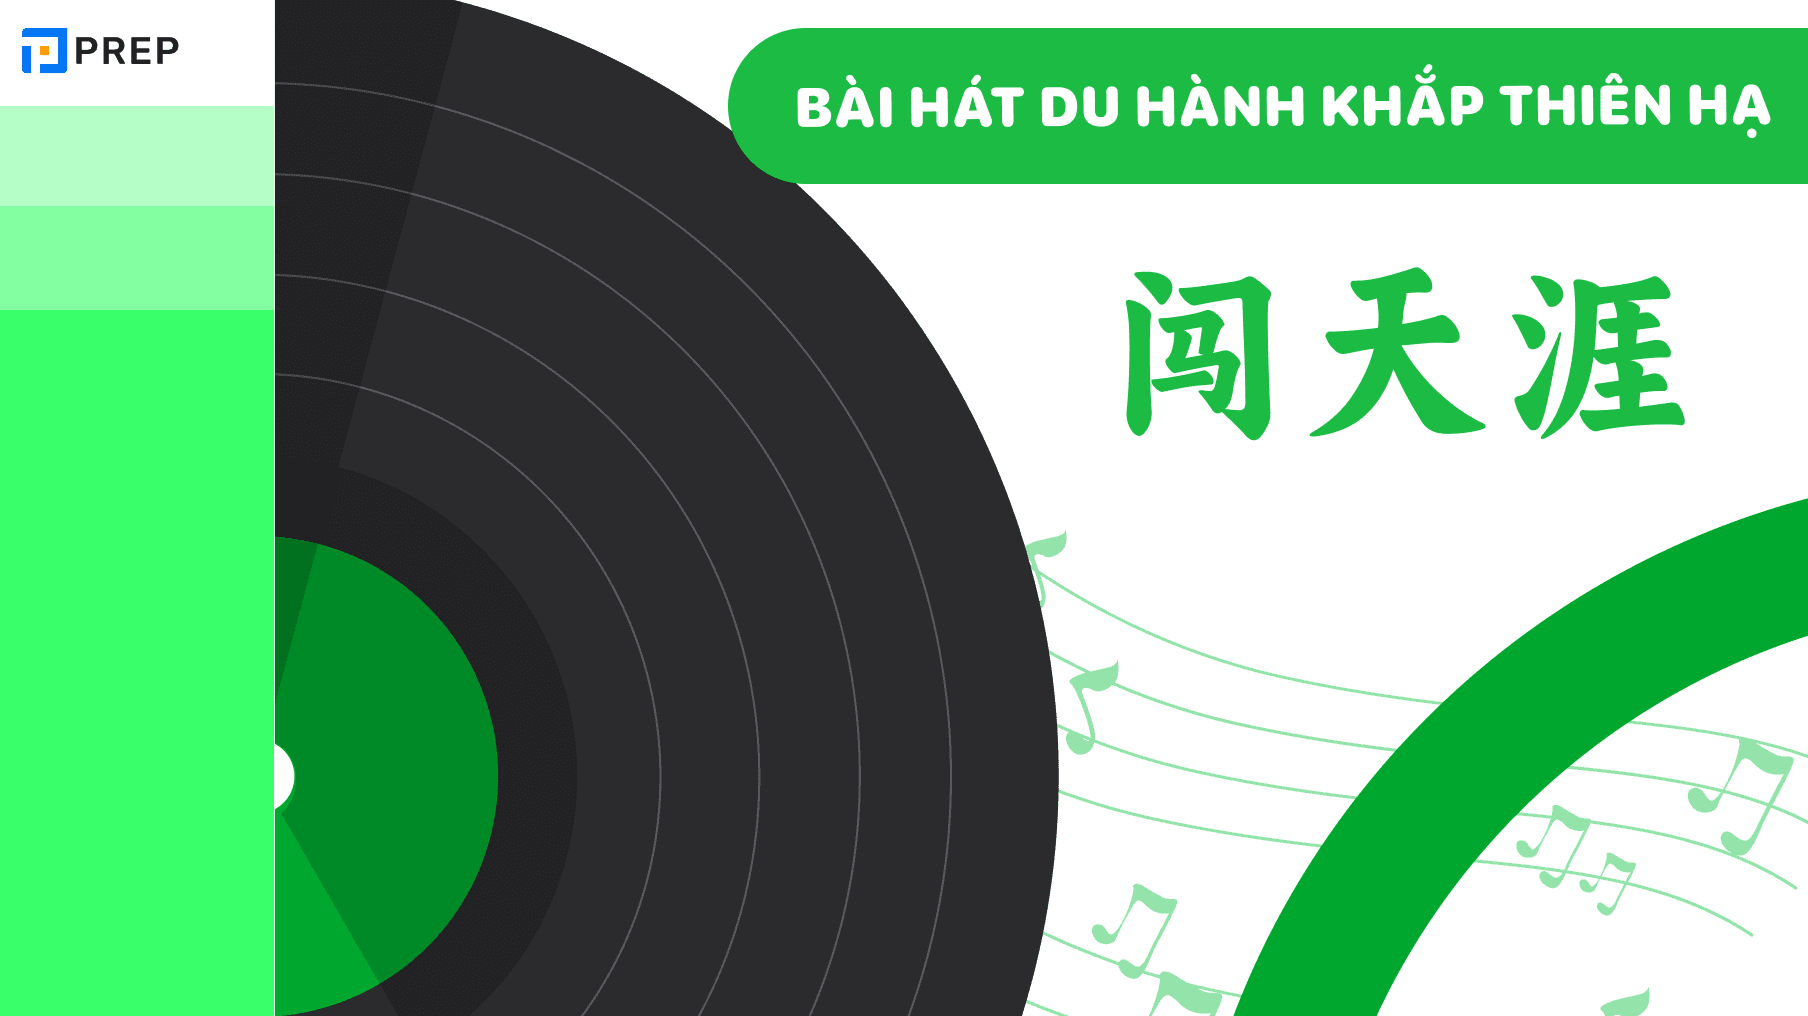 Học tiếng Trung qua bài hát Du hành khắp thiên hạ